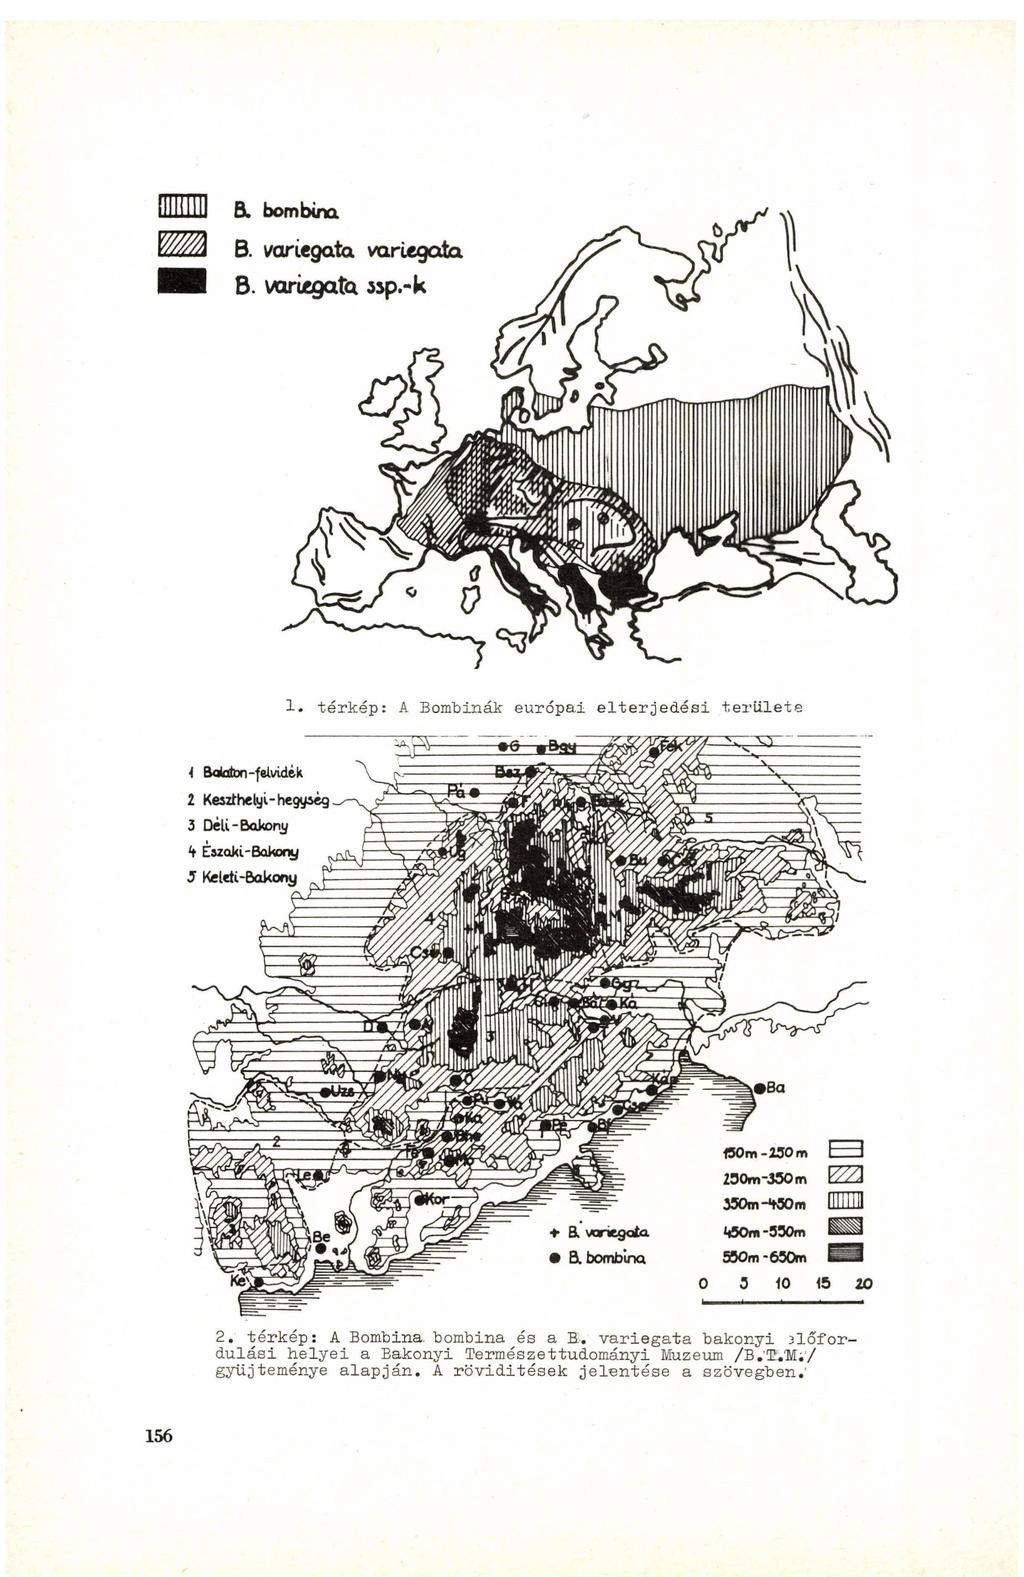 1. térkép: A Bombinák európai elterjedési területe 2. térkép: A Bombina. bombina és a B.